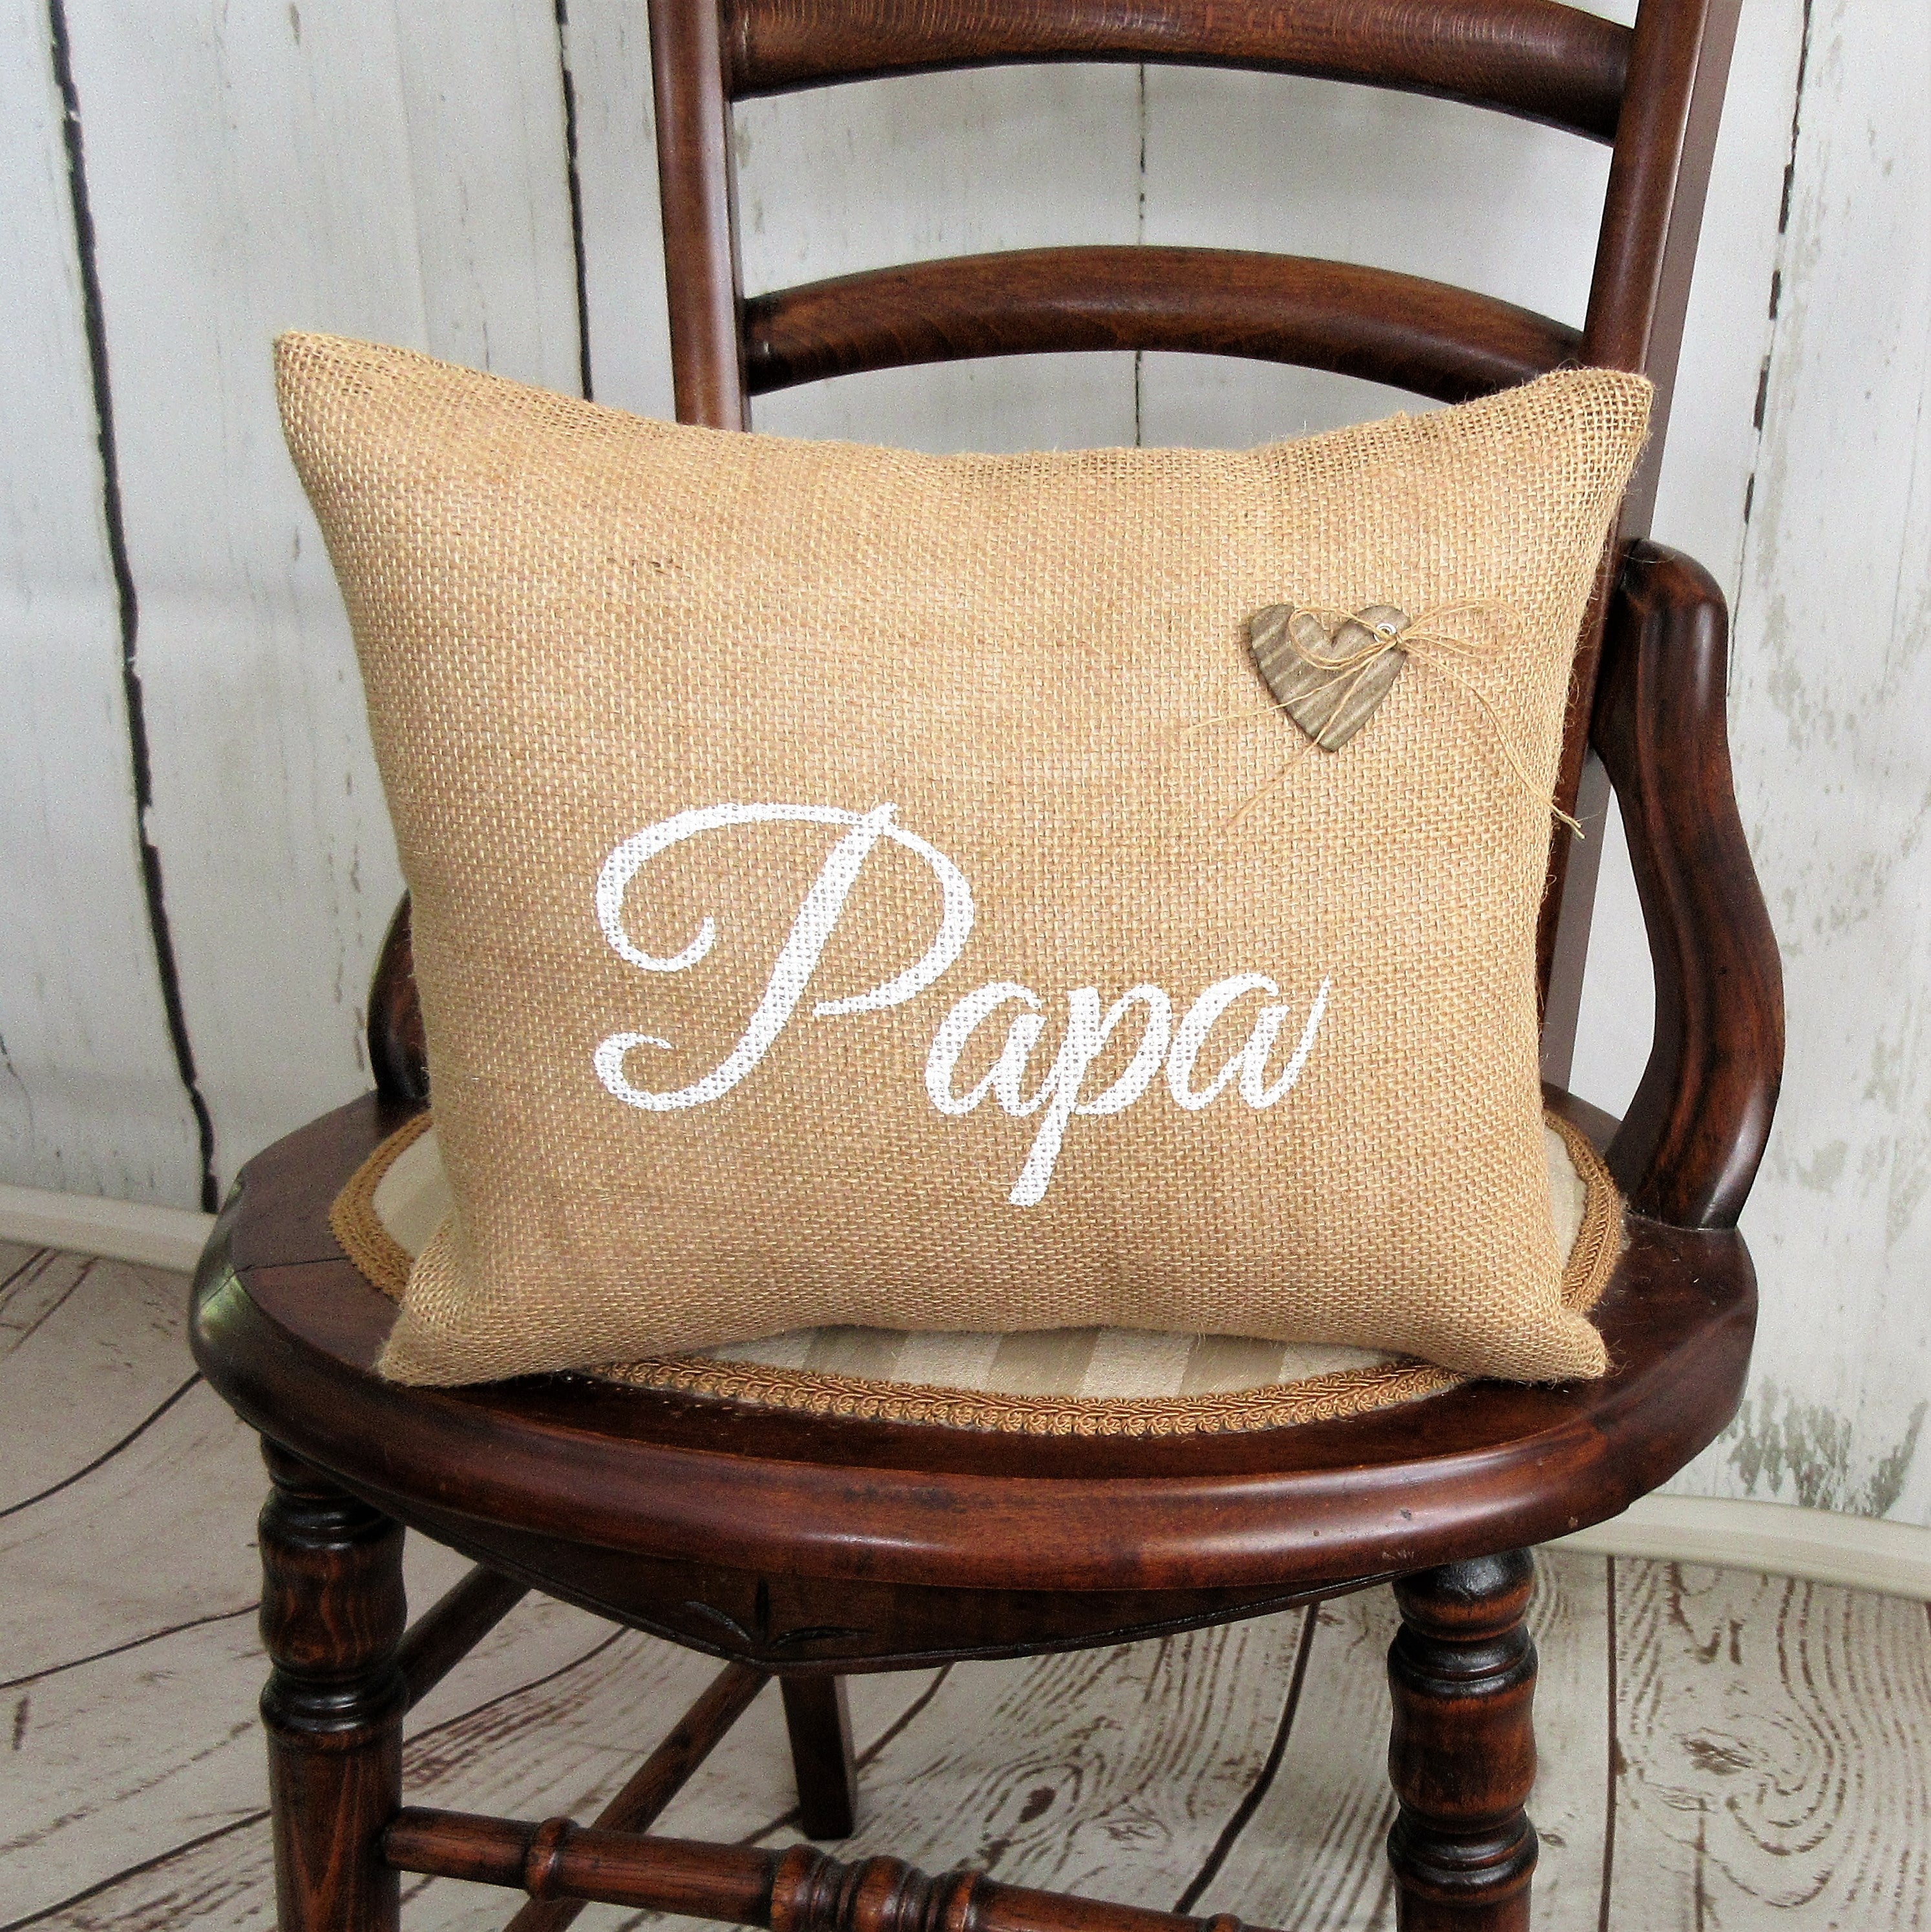 Nana, Papa, Medium Size Burlap Pillow